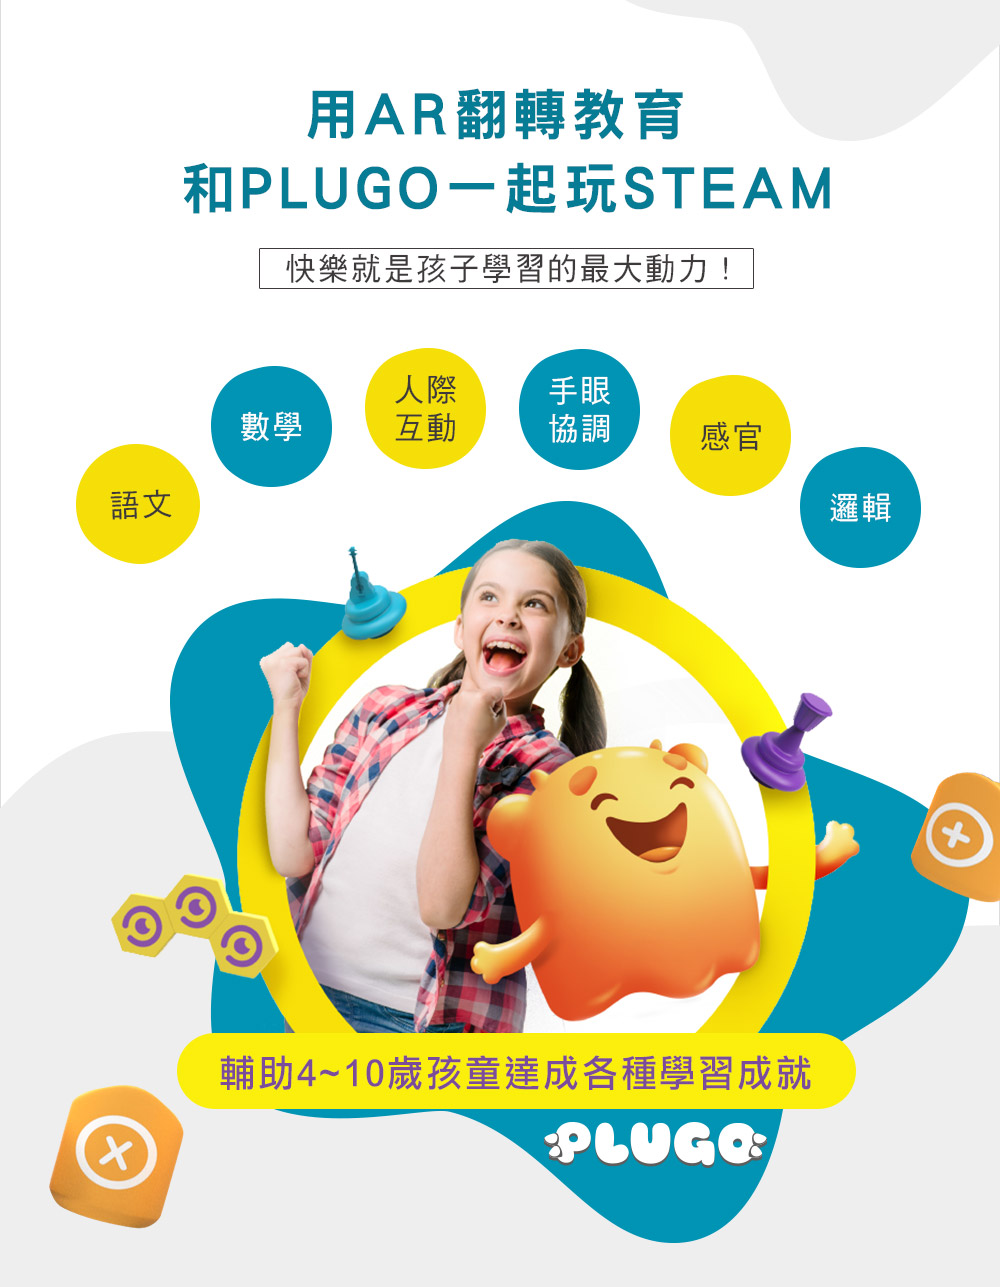 PLUGO 互動式益智教具，STEAM教育推薦益智玩具 | shifu 互動式玩具